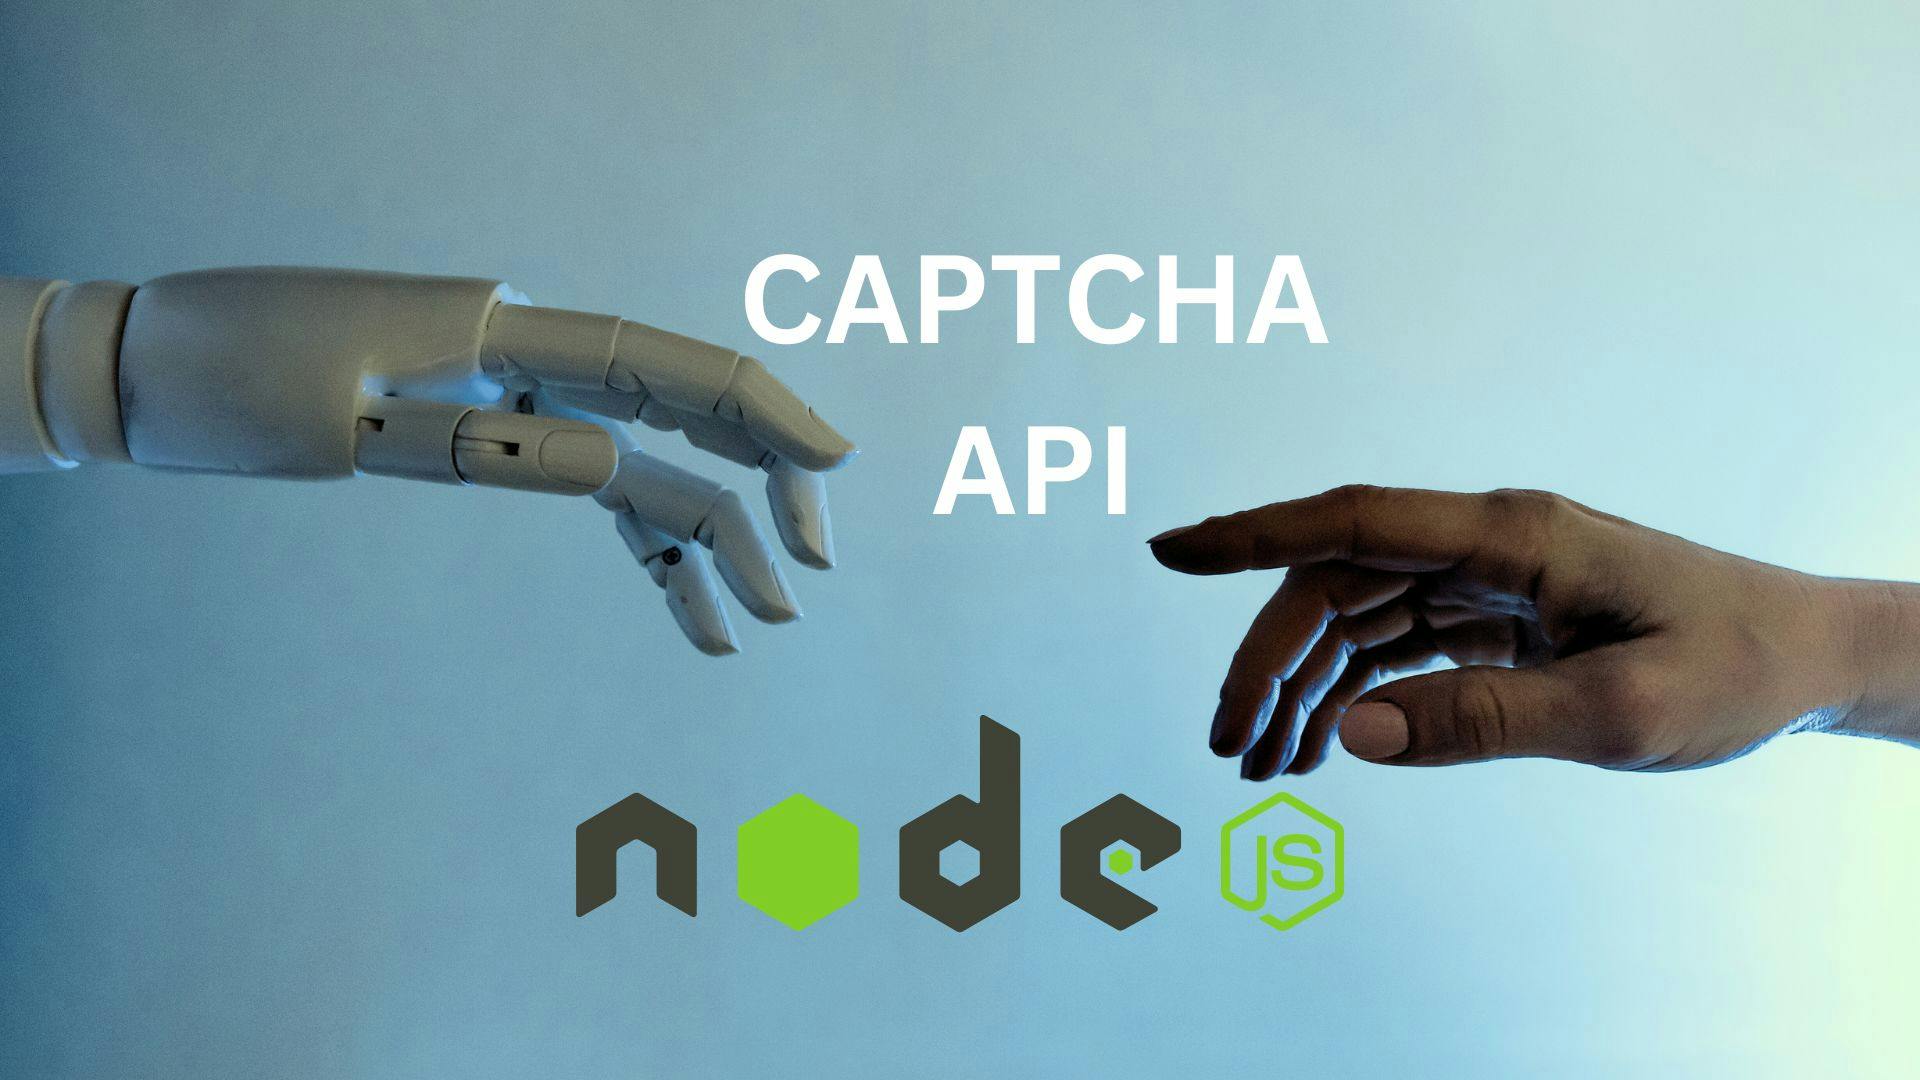 Building a CAPTCHA API with Nodejs